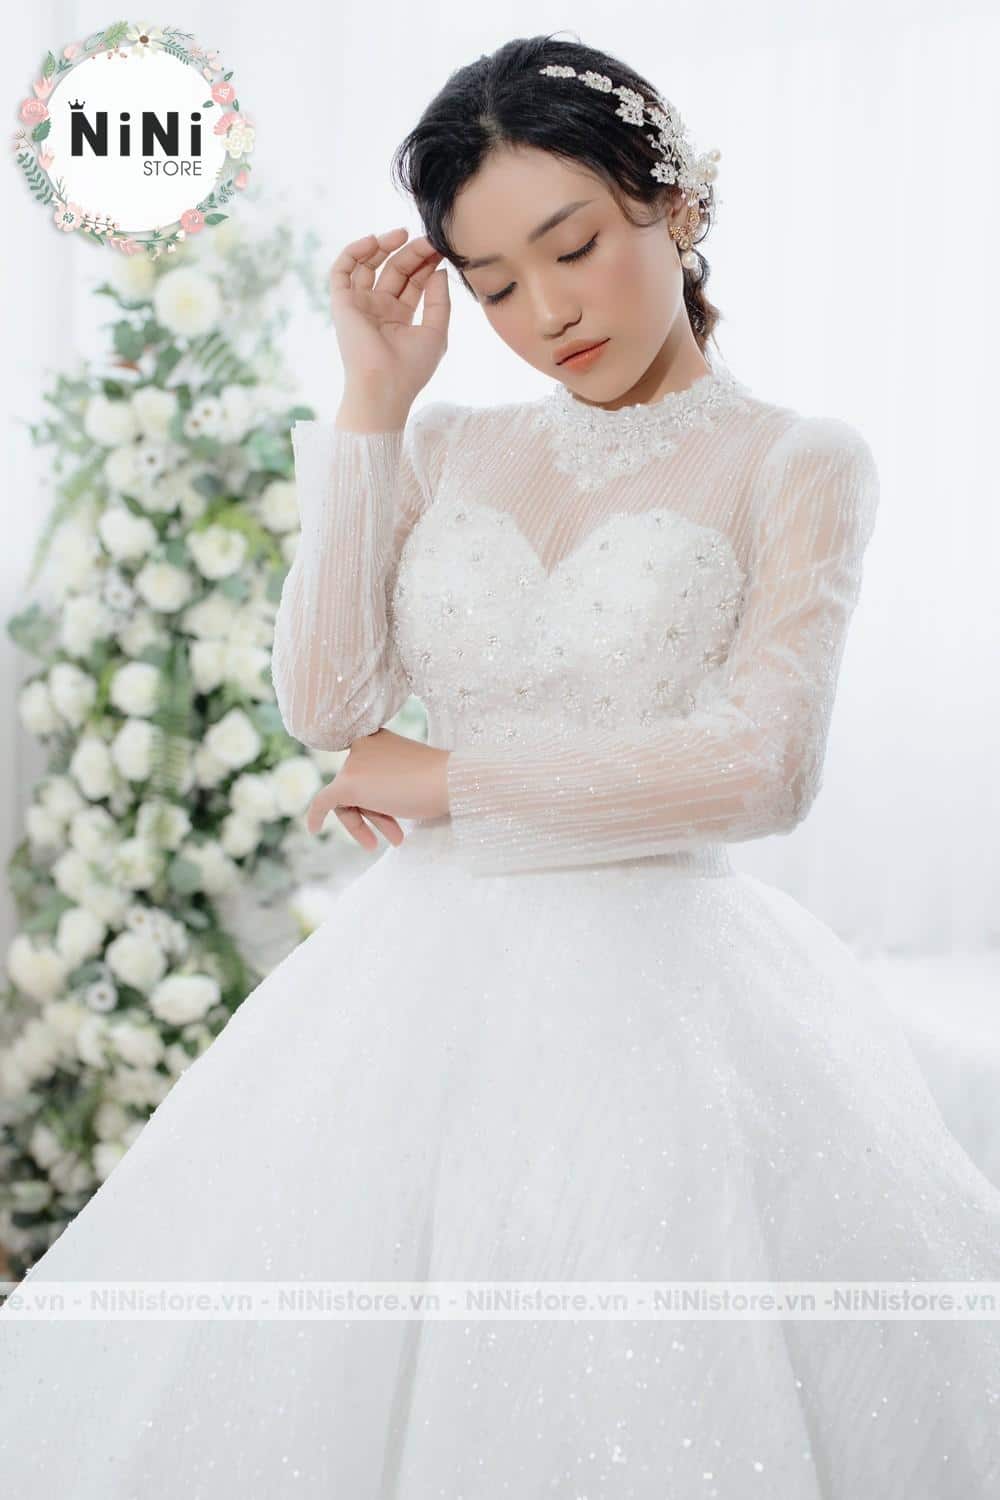 Top 10 mẫu đầm cô dâu đơn giản đẹp theo xu hướng 2022